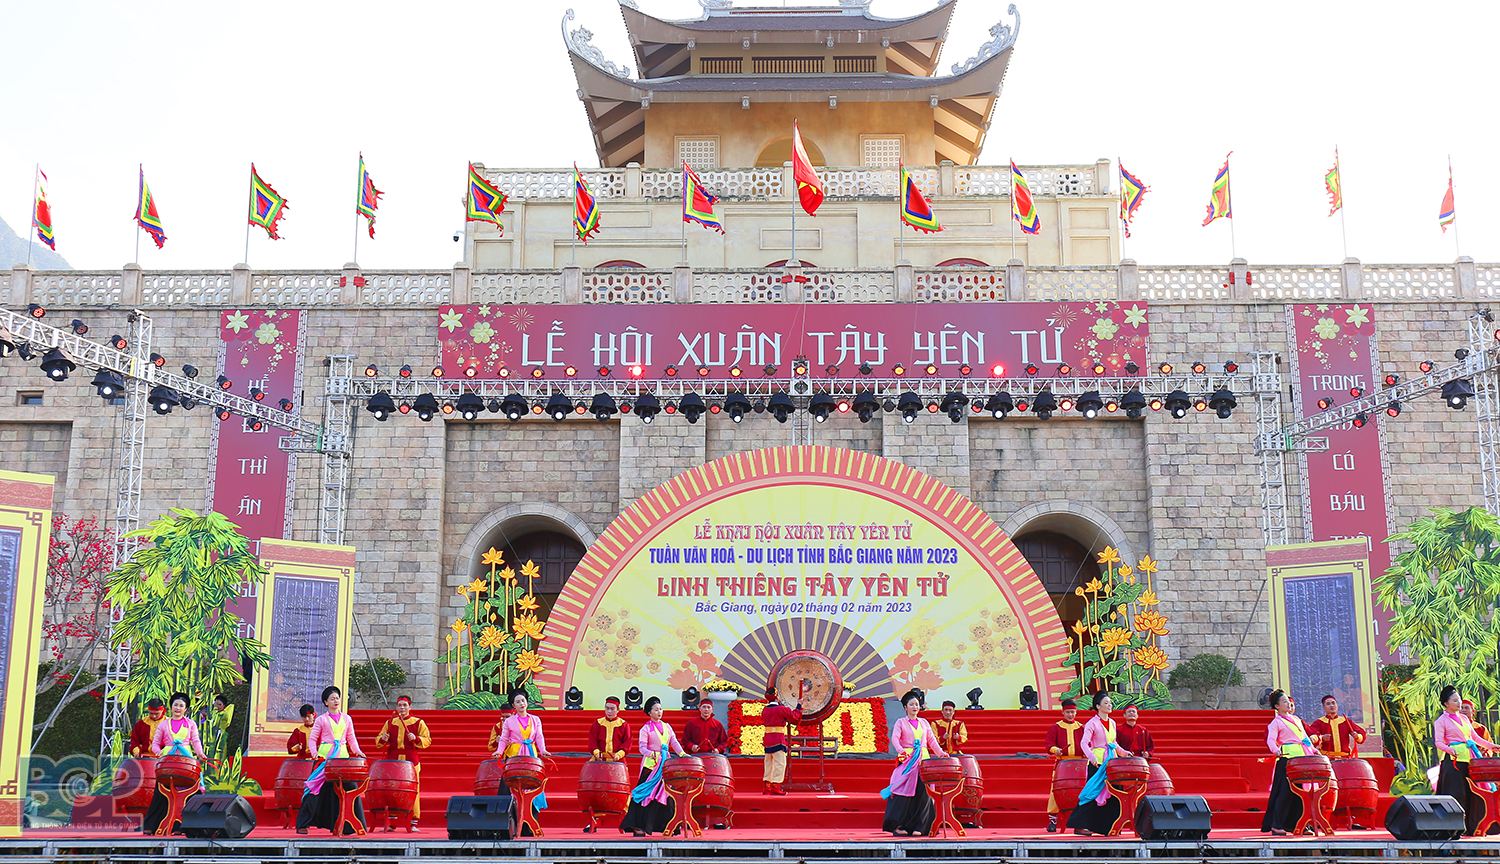  Tuần Văn hóa - Du lịch tỉnh Bắc Giang năm 2024 có chủ đề “Linh thiêng Tây Yên Tử” sẽ diễn ra trong 6 ngày, từ ngày 20/2 đến ngày 25/2/2024 (tức từ ngày 11 đến 16 tháng Giêng năm Giáp Thìn). 